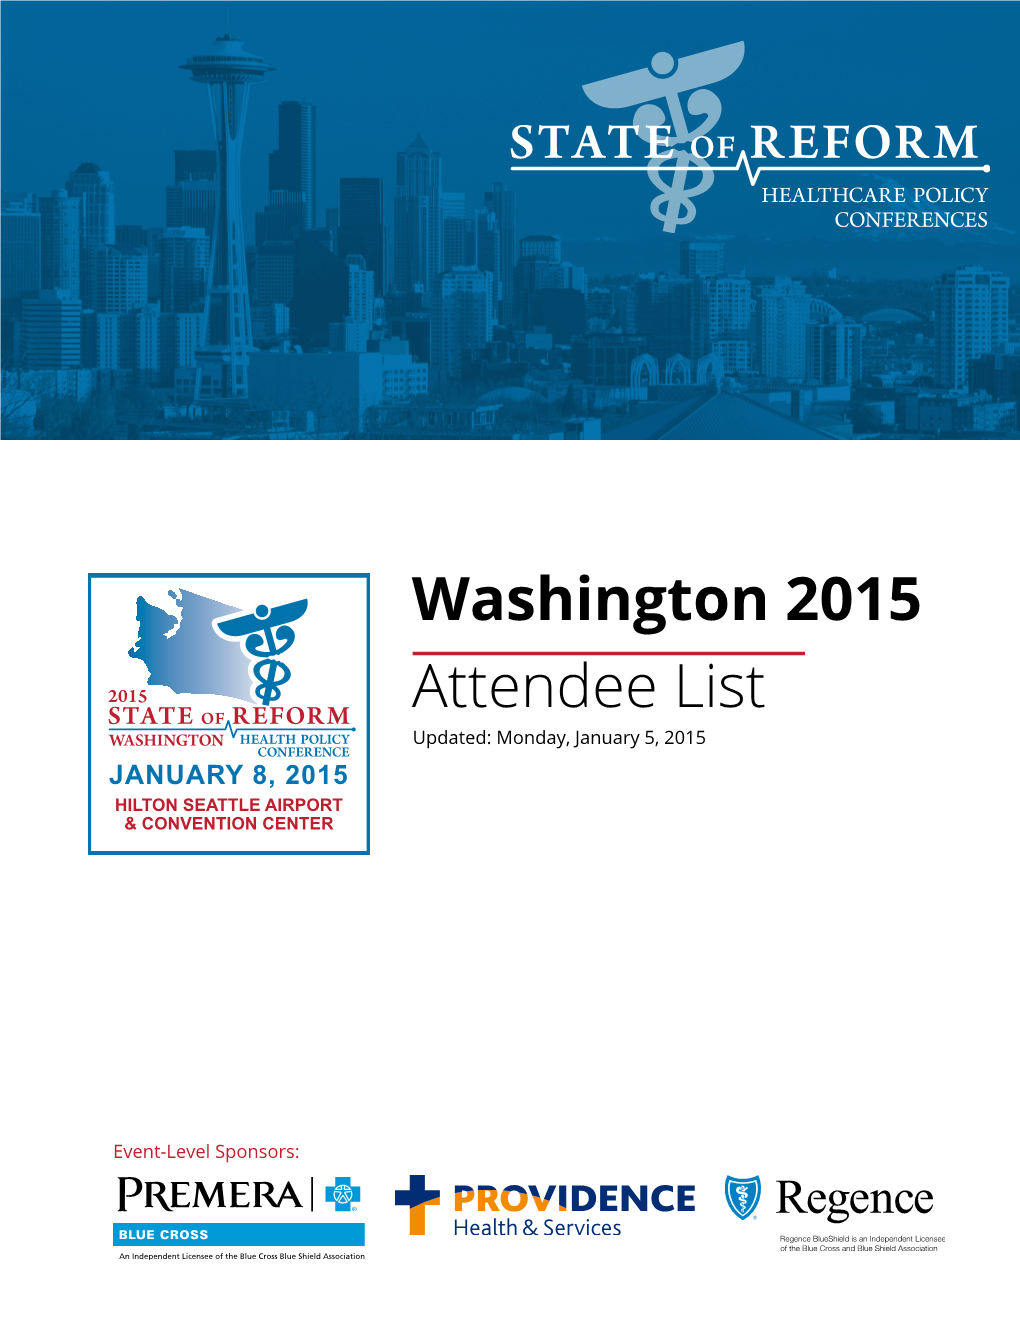 Washington 2015 Attendee List